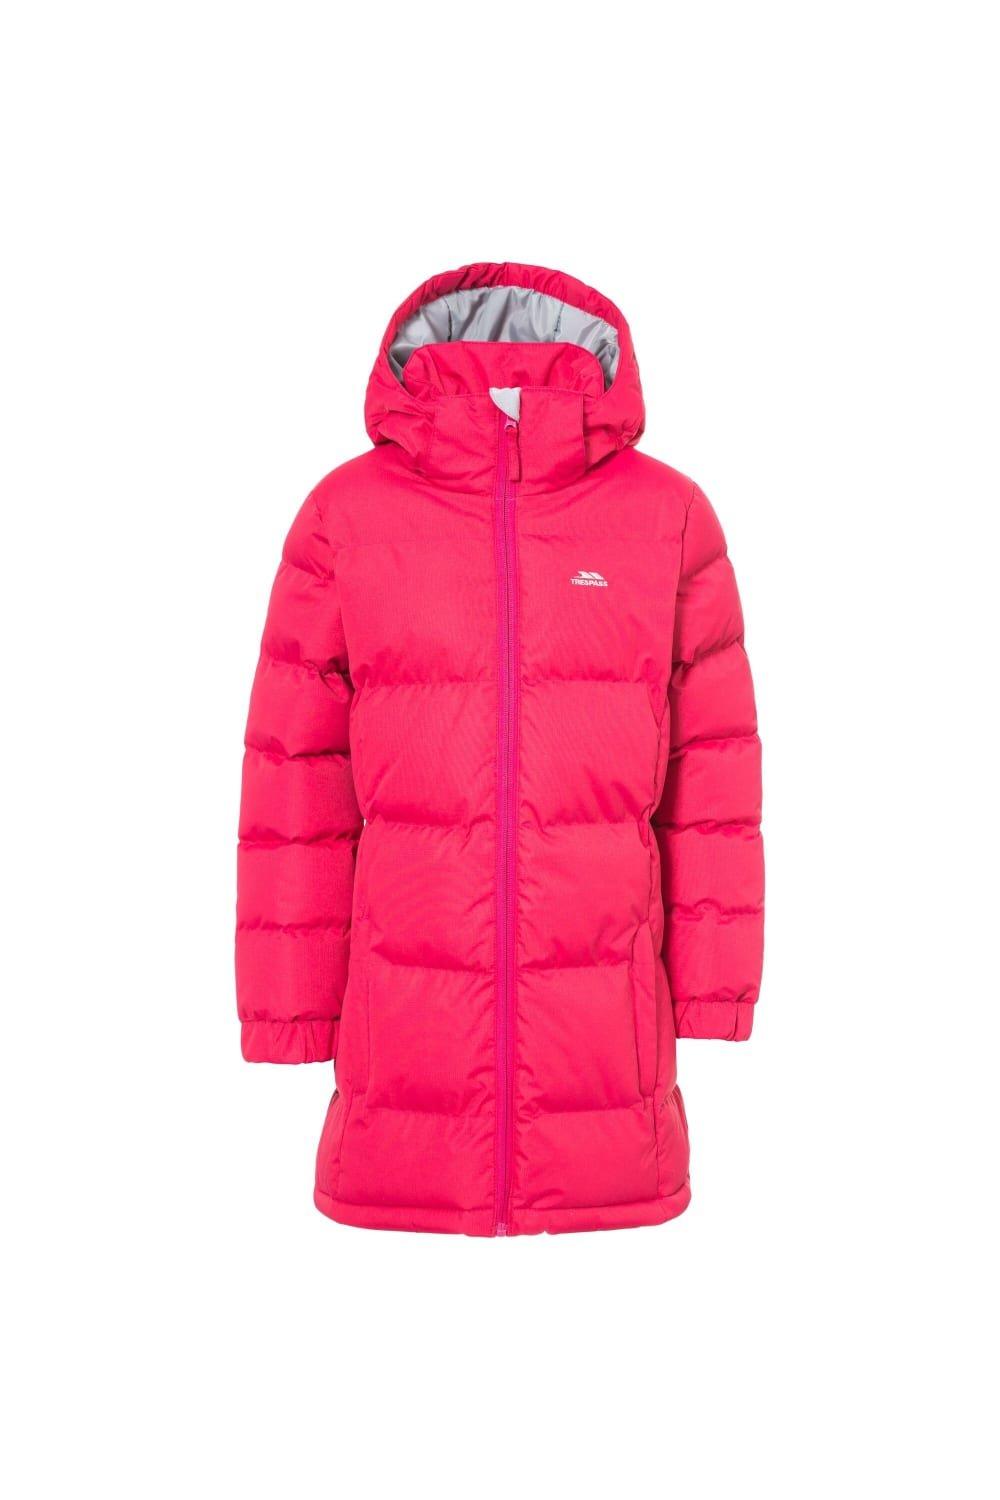 Стеганое пальто Tiffy Trespass, розовый куртка утепленная для девочек demix бежевый